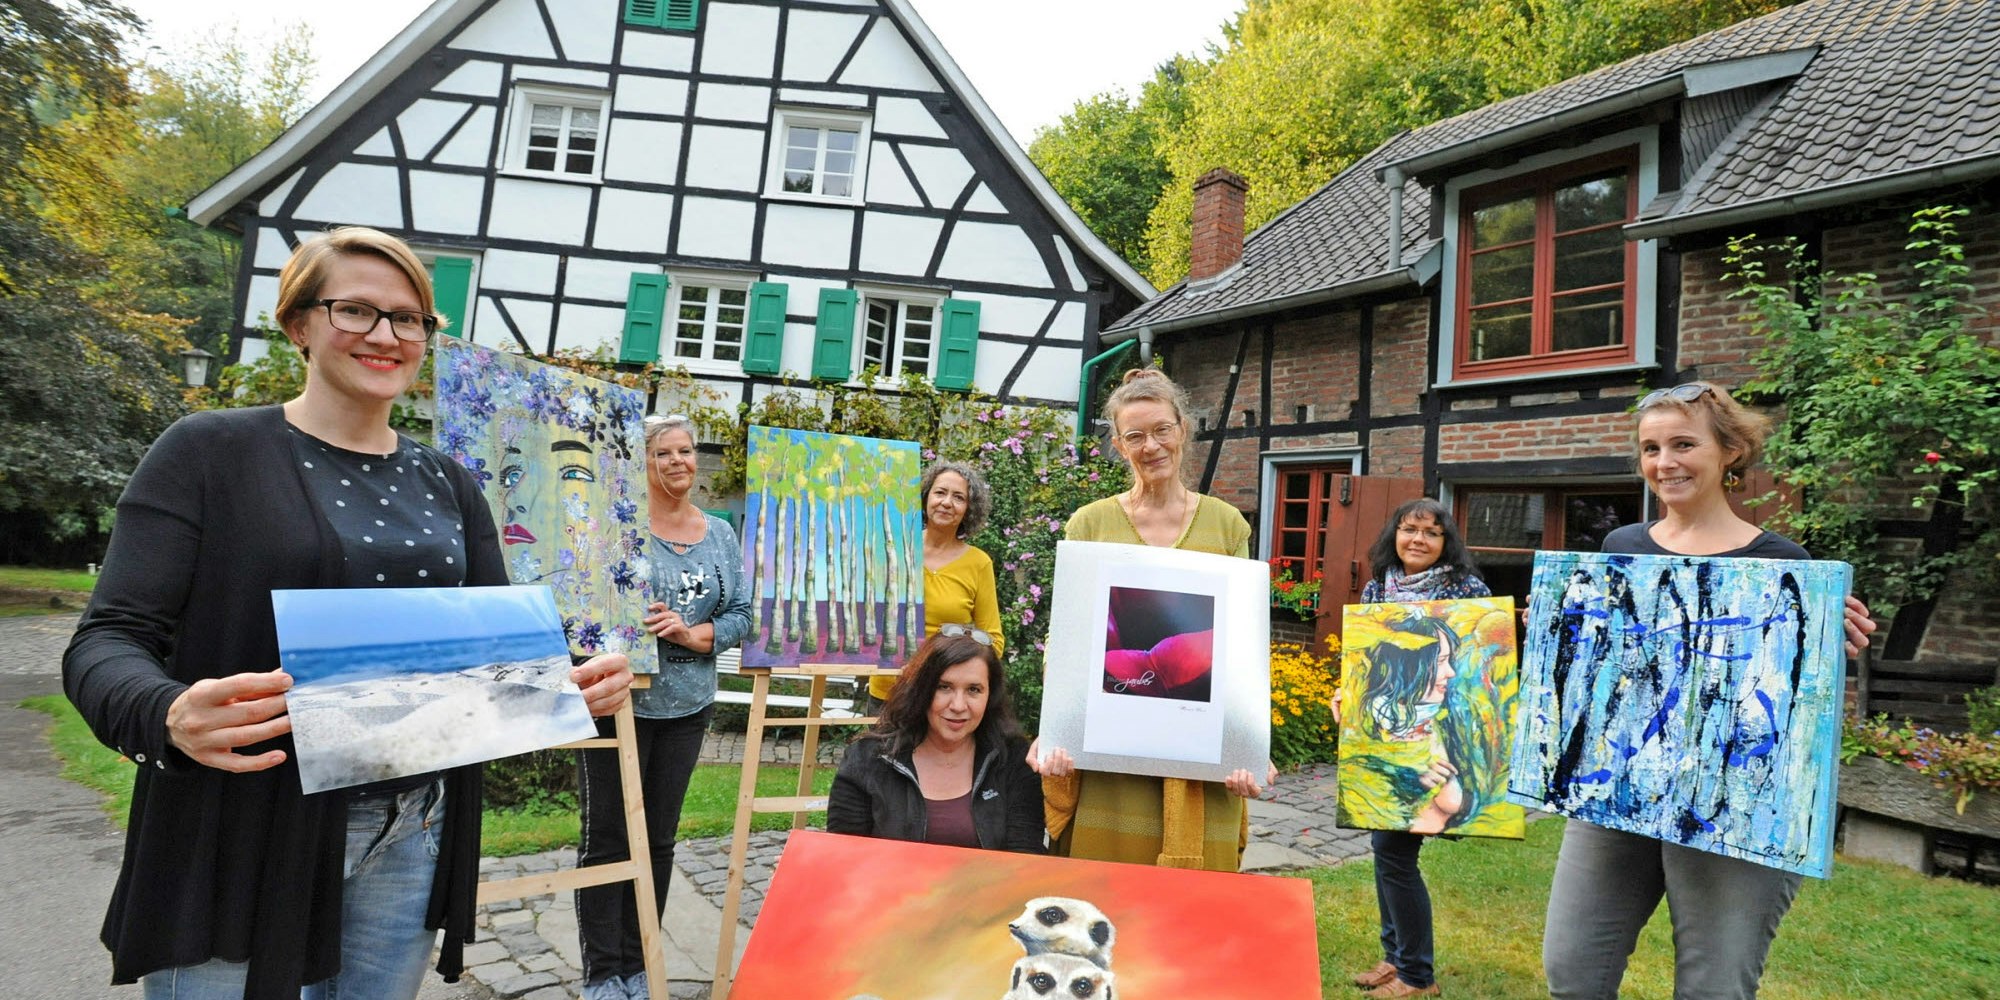 Ina Hartmann, Birgitt Negro, Birgit Bühle, Hanna Punte, Mariama Hense, Anna Czempik und Anja Rübo (von links) zeigen ihre Werke in der Lambertsmühle.